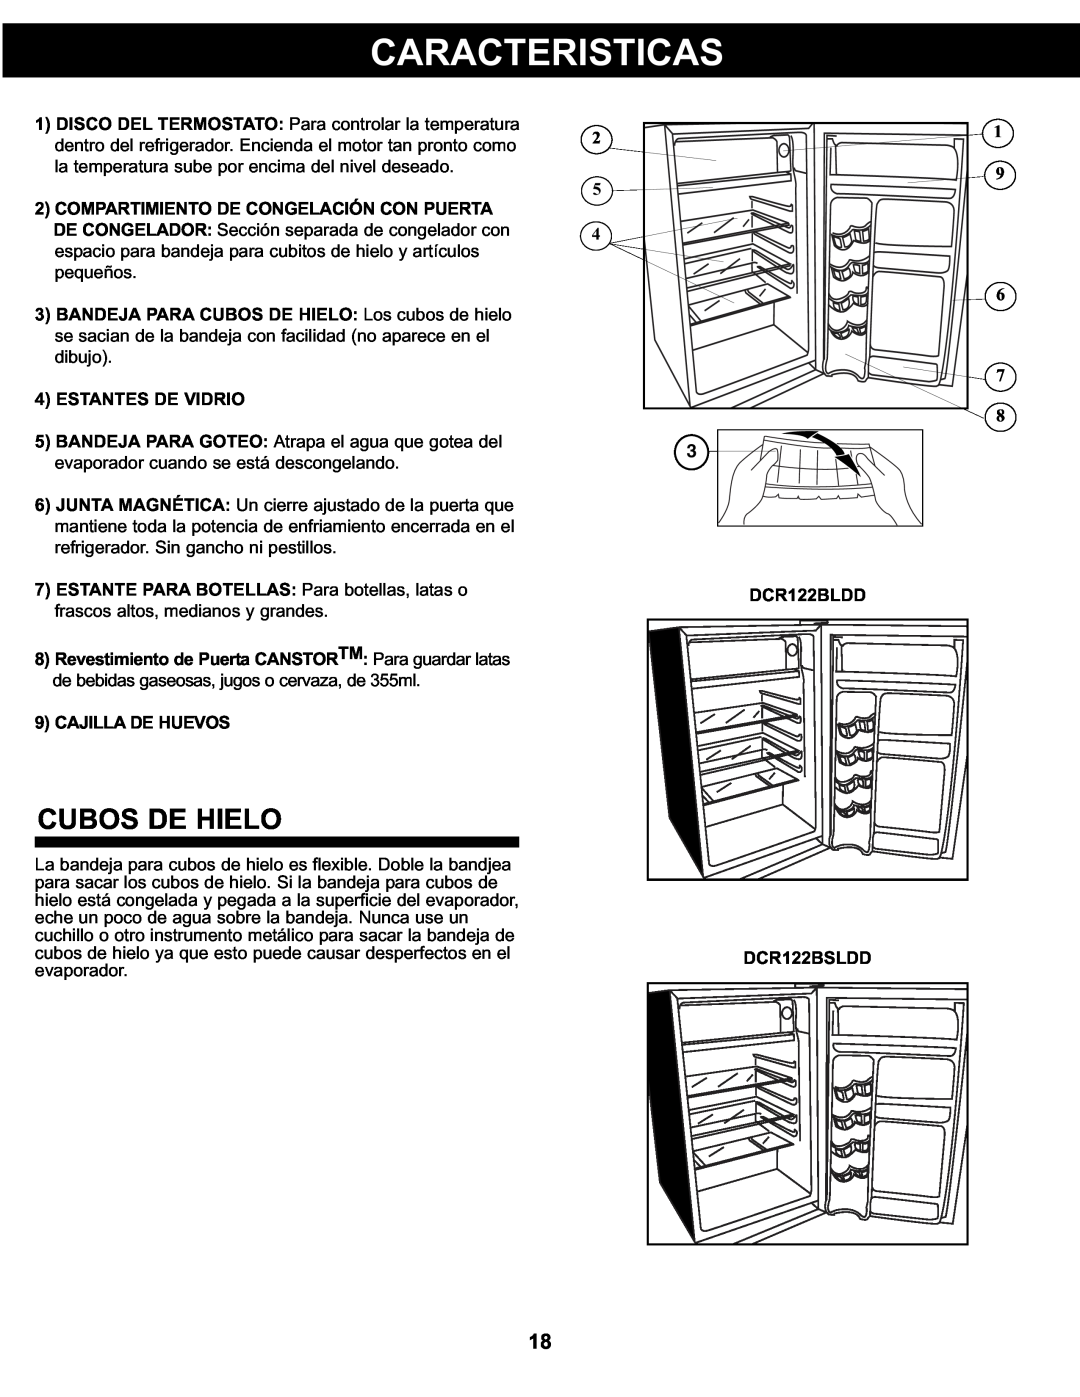 Danby DCR122BSLDD manual Caracteristicas, Cubos De Hielo, 4ESTANTES DE VIDRIO, 9CAJILLA DE HUEVOS, DCR122BLDD 